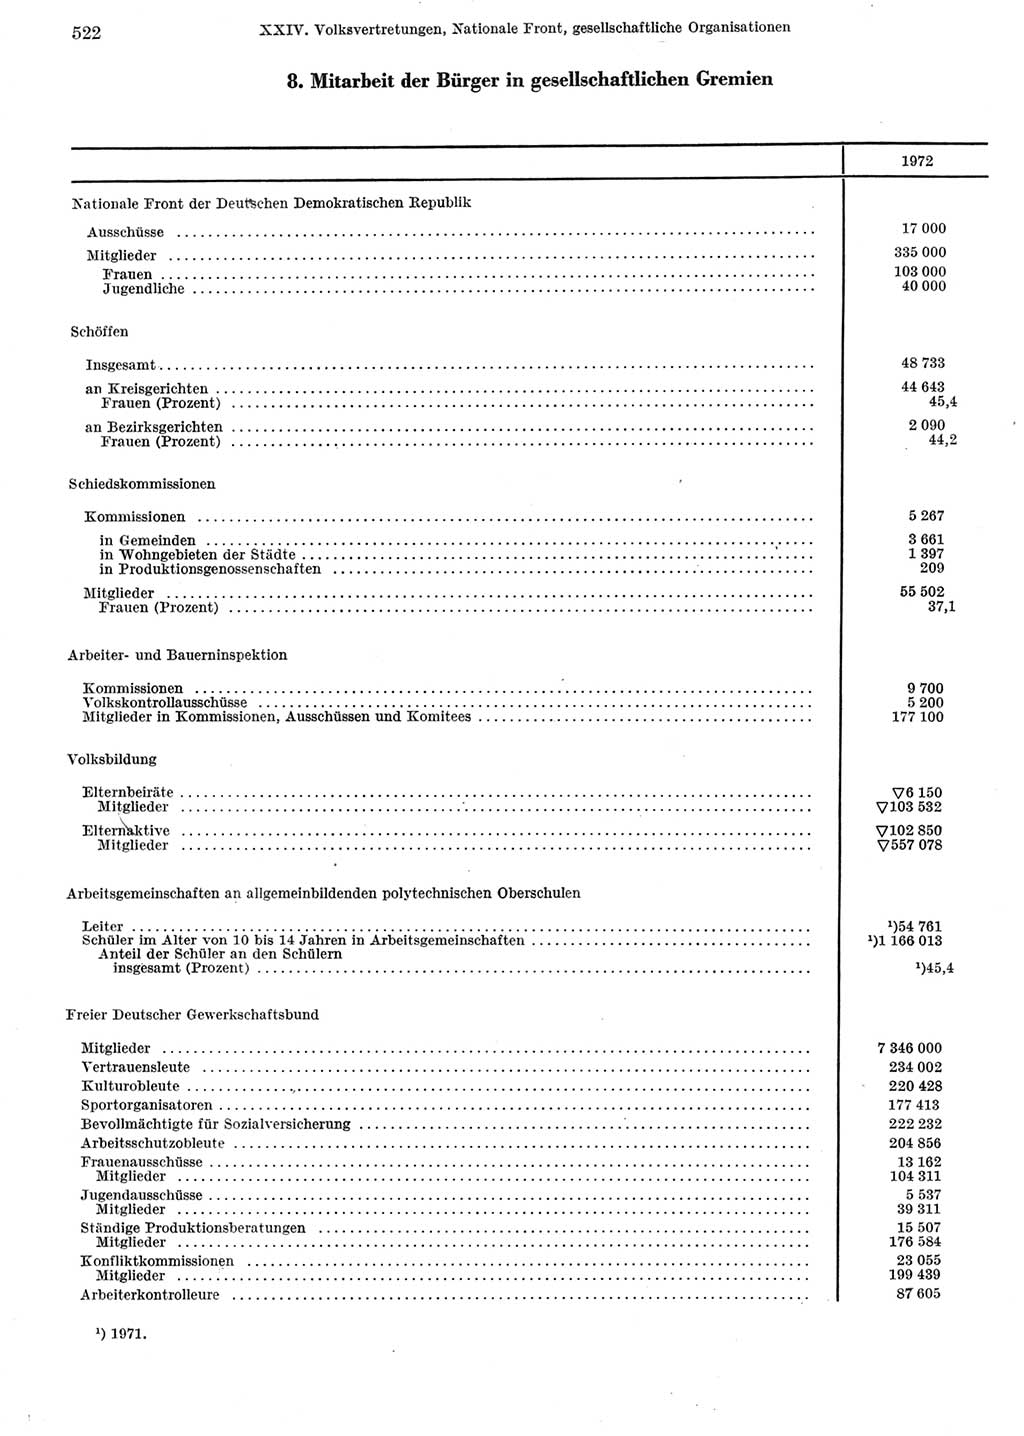 Statistisches Jahrbuch der Deutschen Demokratischen Republik (DDR) 1973, Seite 522 (Stat. Jb. DDR 1973, S. 522)